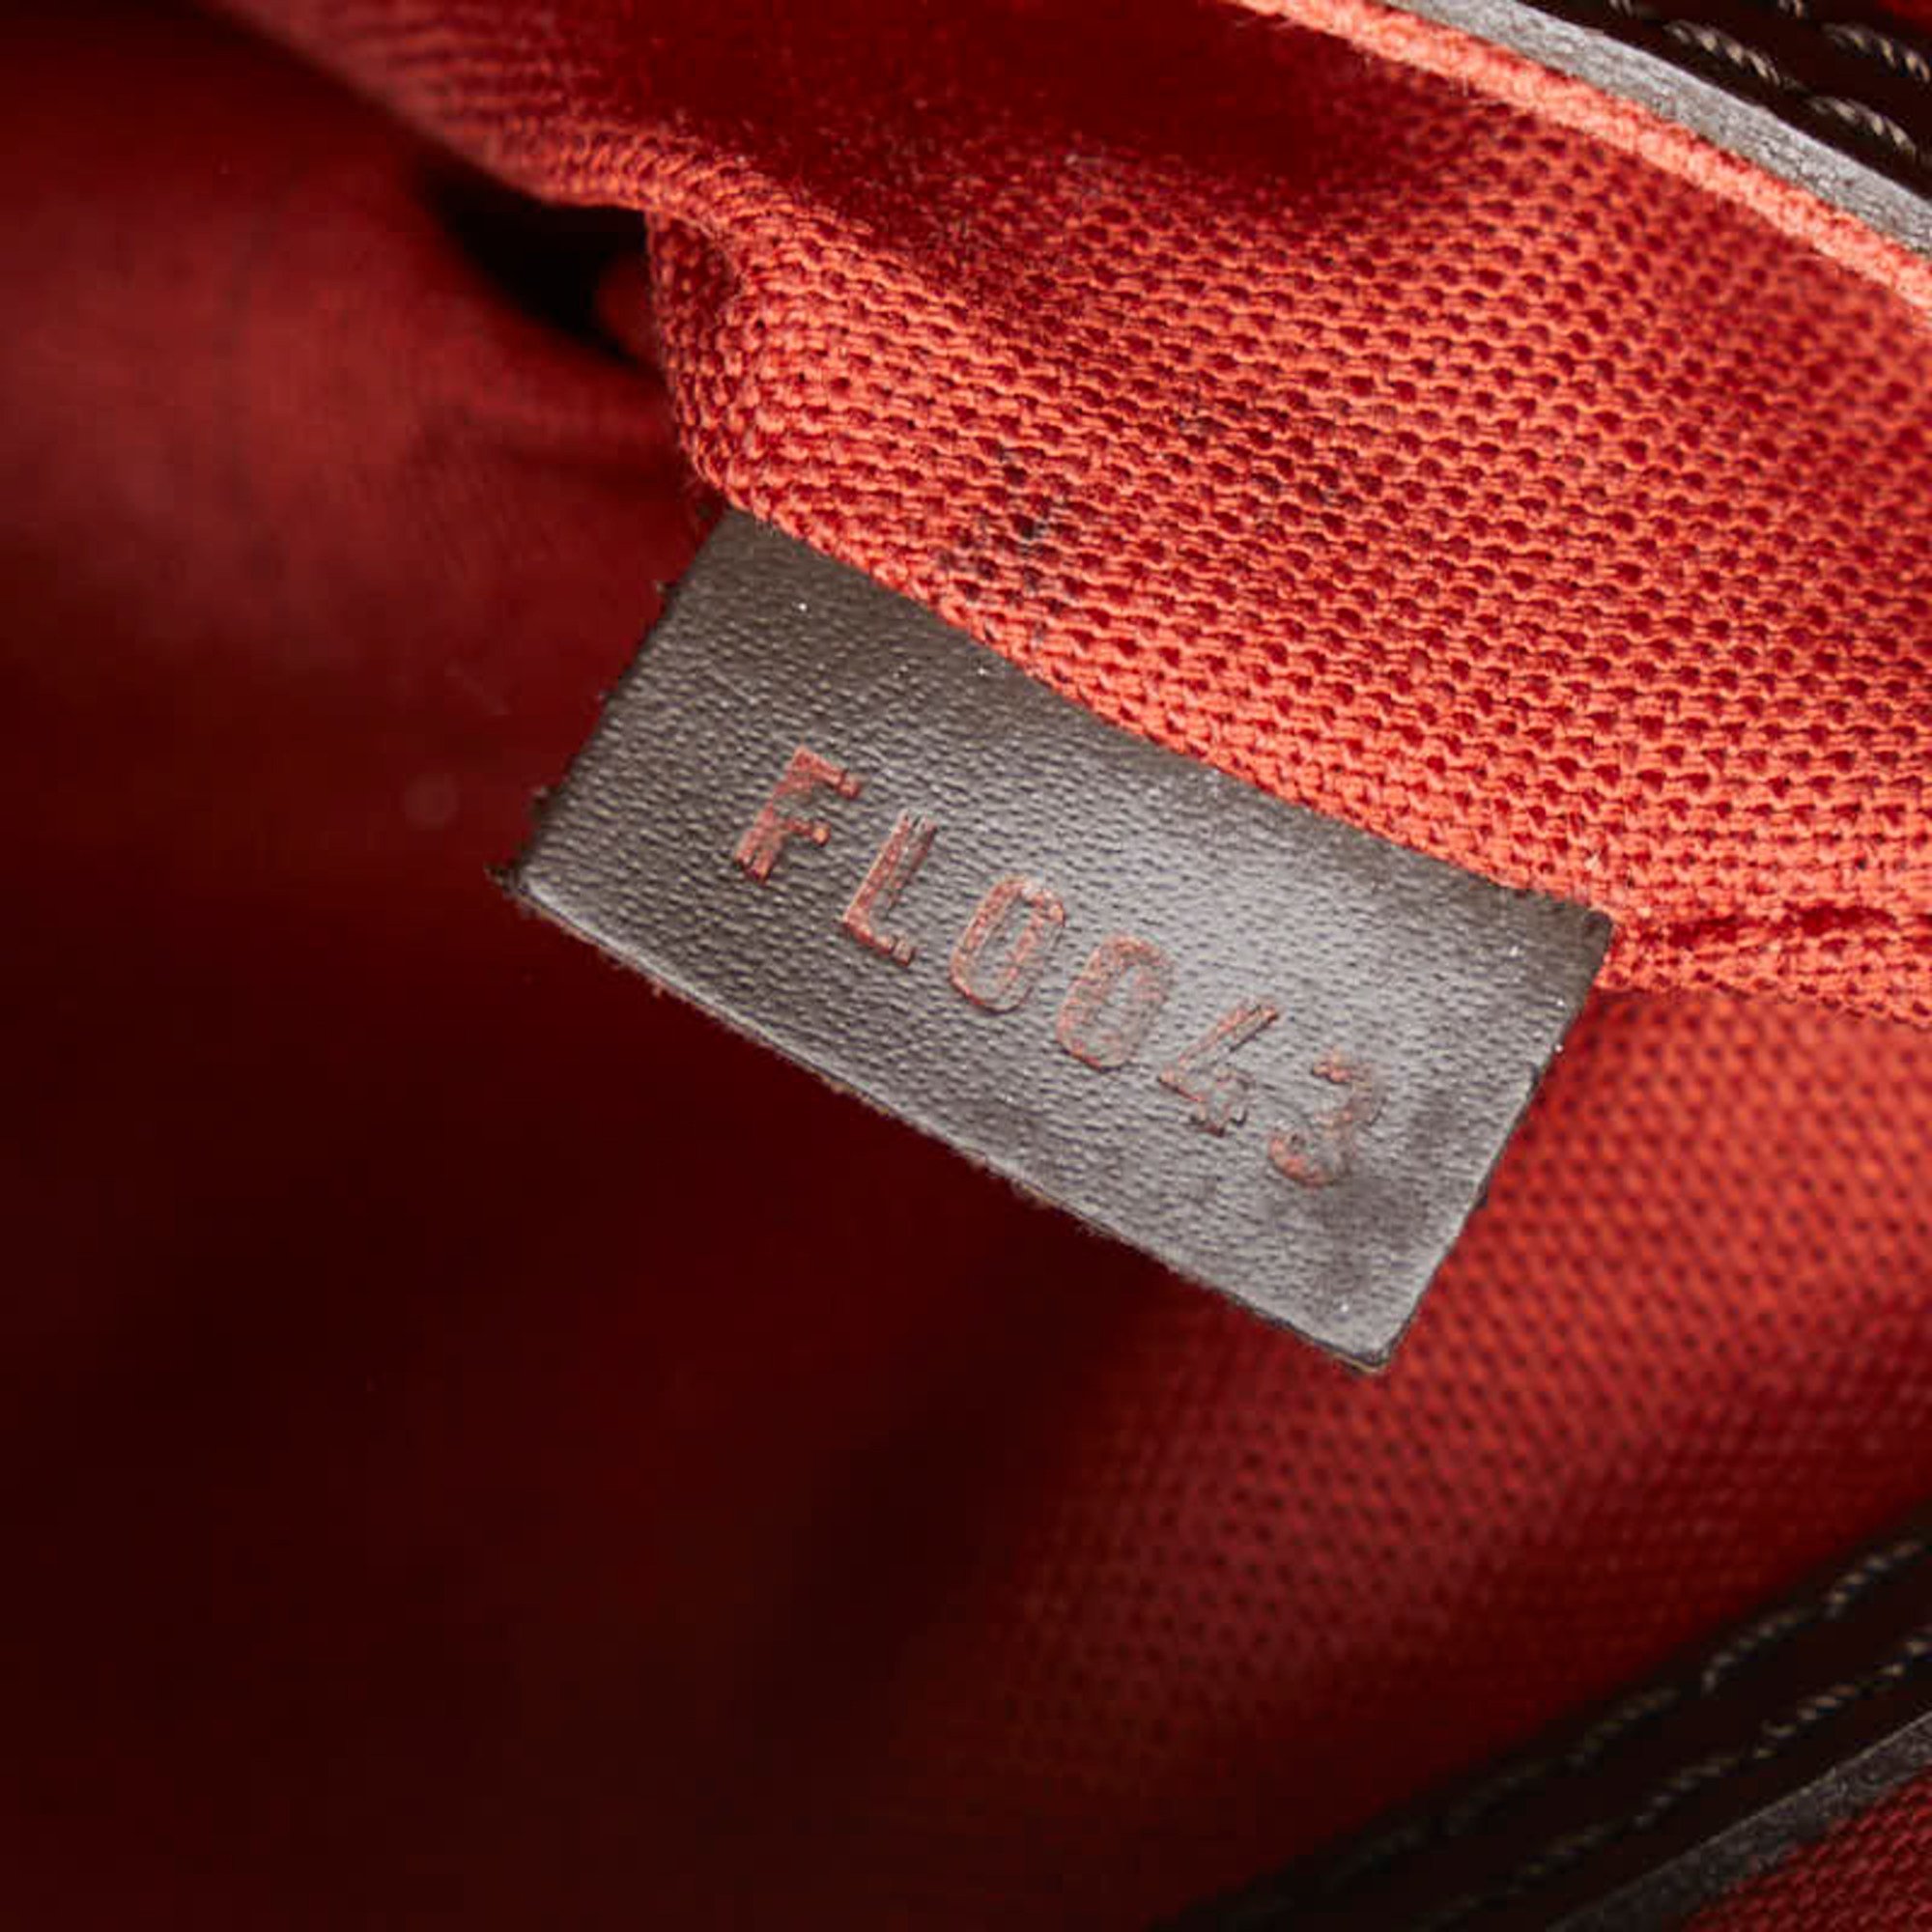 Louis Vuitton Damier Alma PM Handbag N51131 Brown PVC Leather Women's LOUIS VUITTON